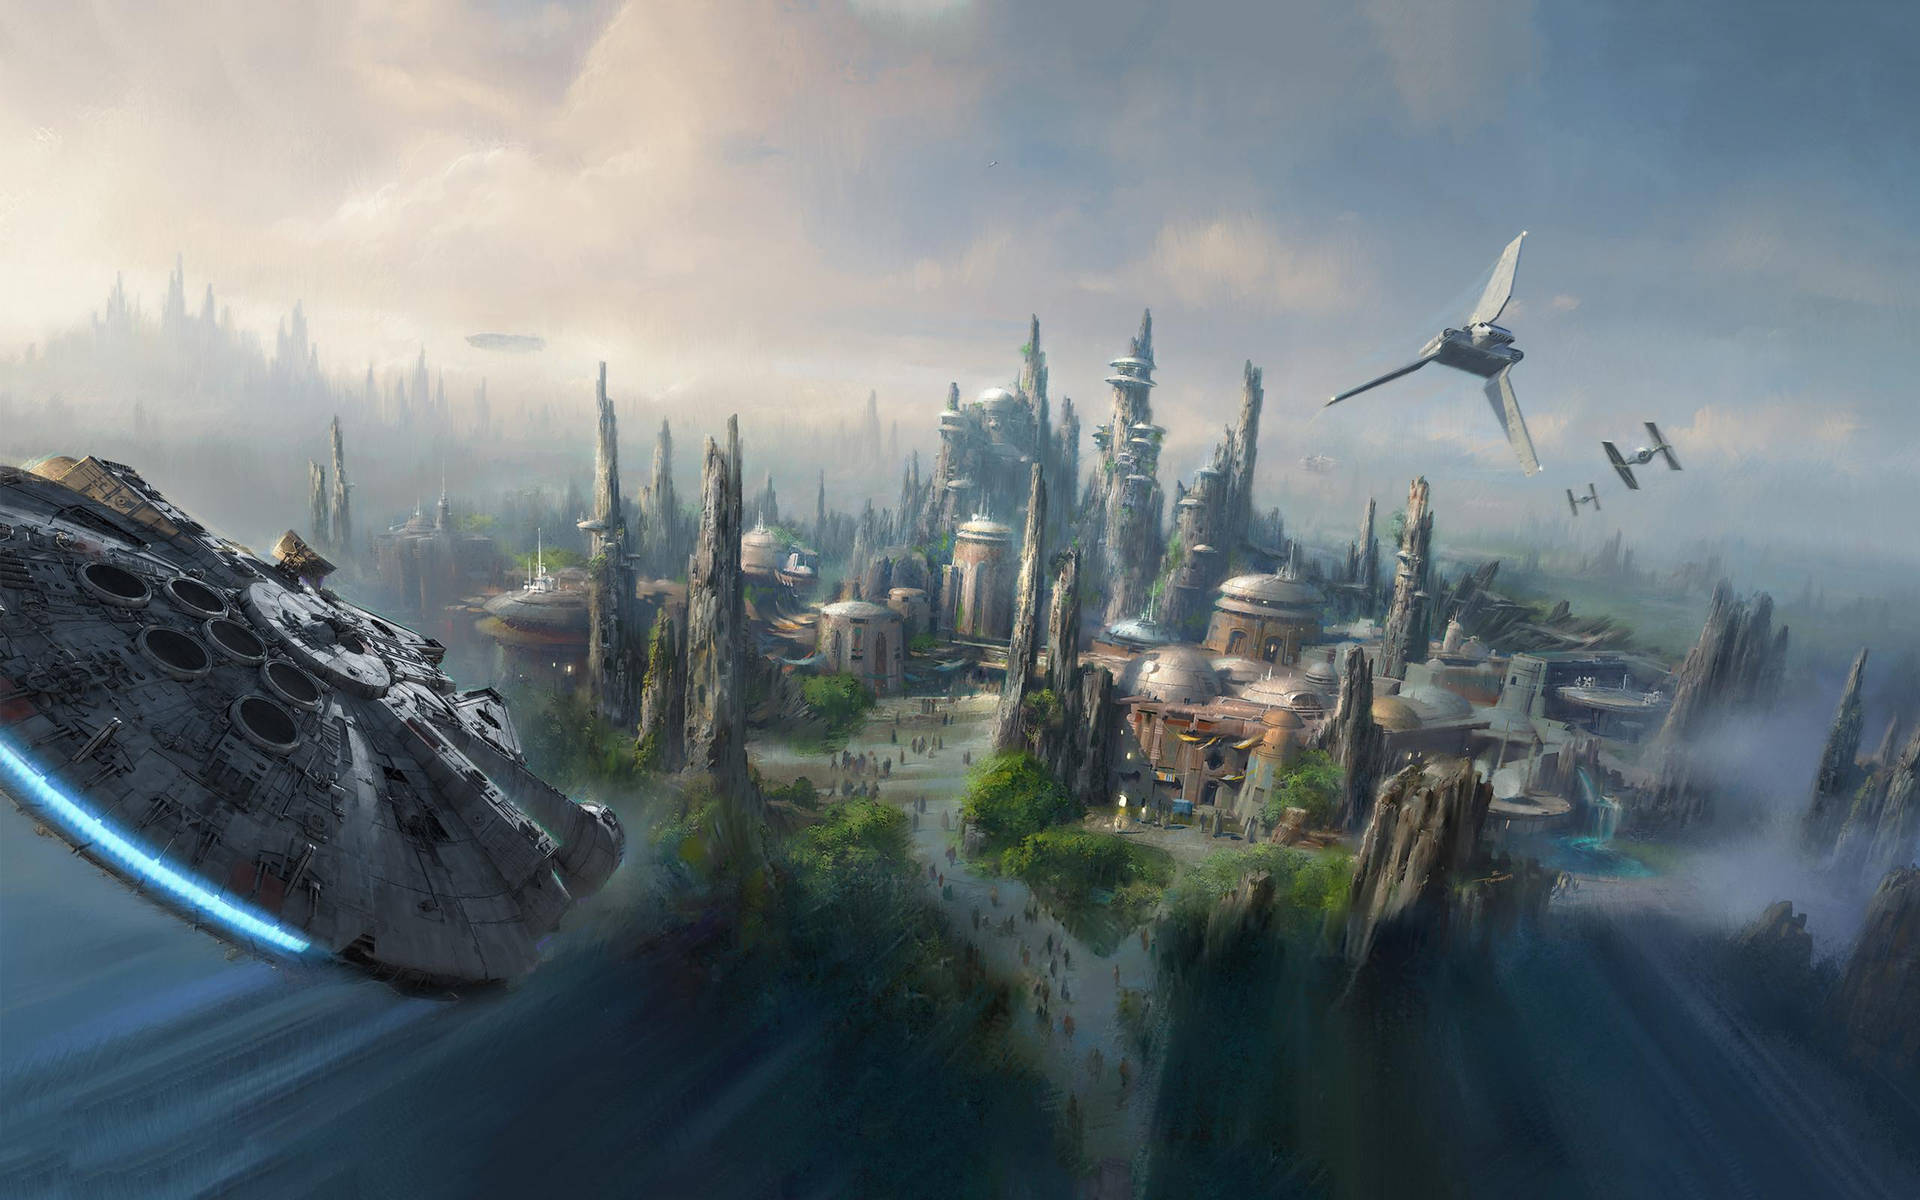 Star Wars Land Disney 4k Ultra Wide Art